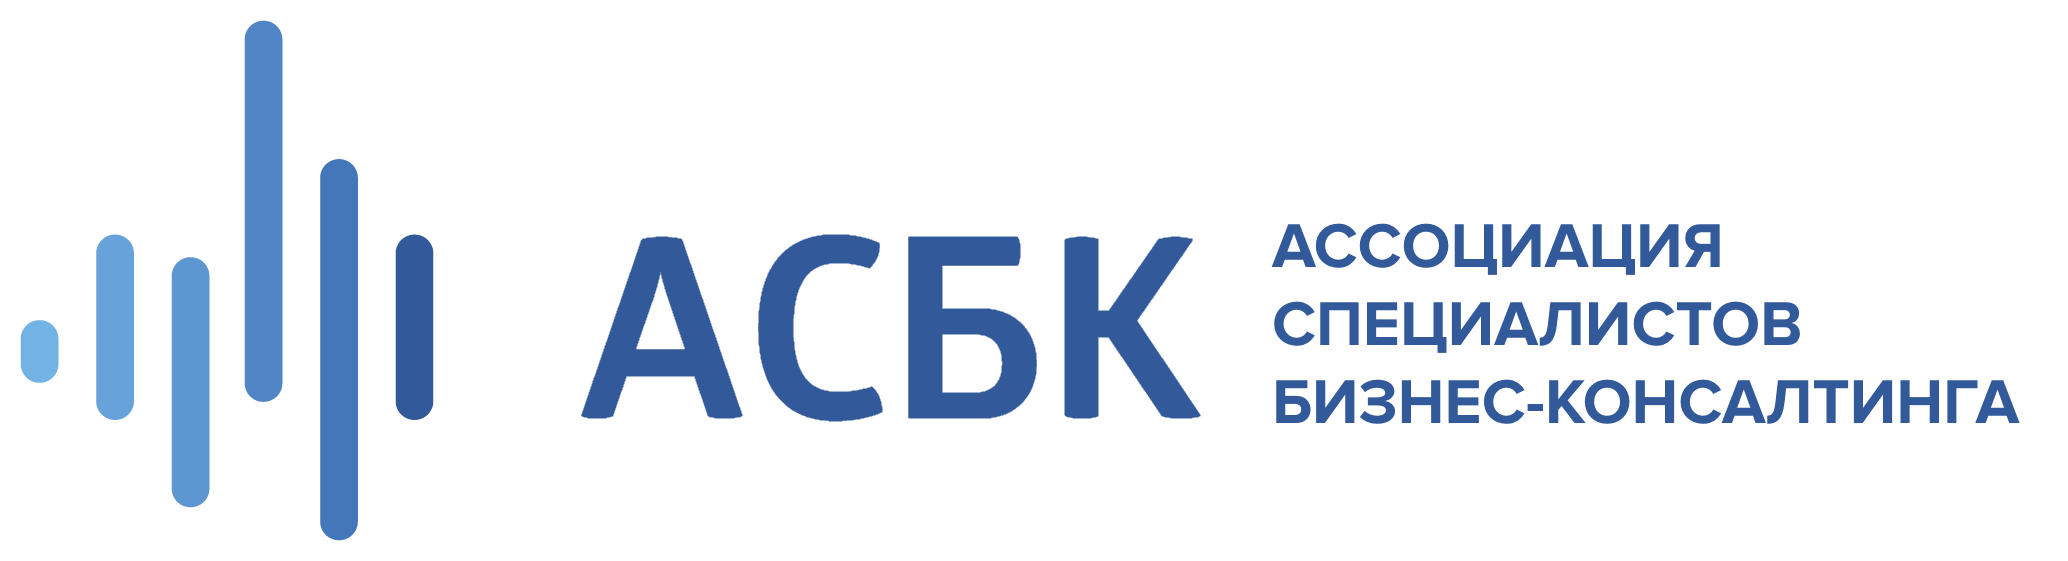 asbc logo